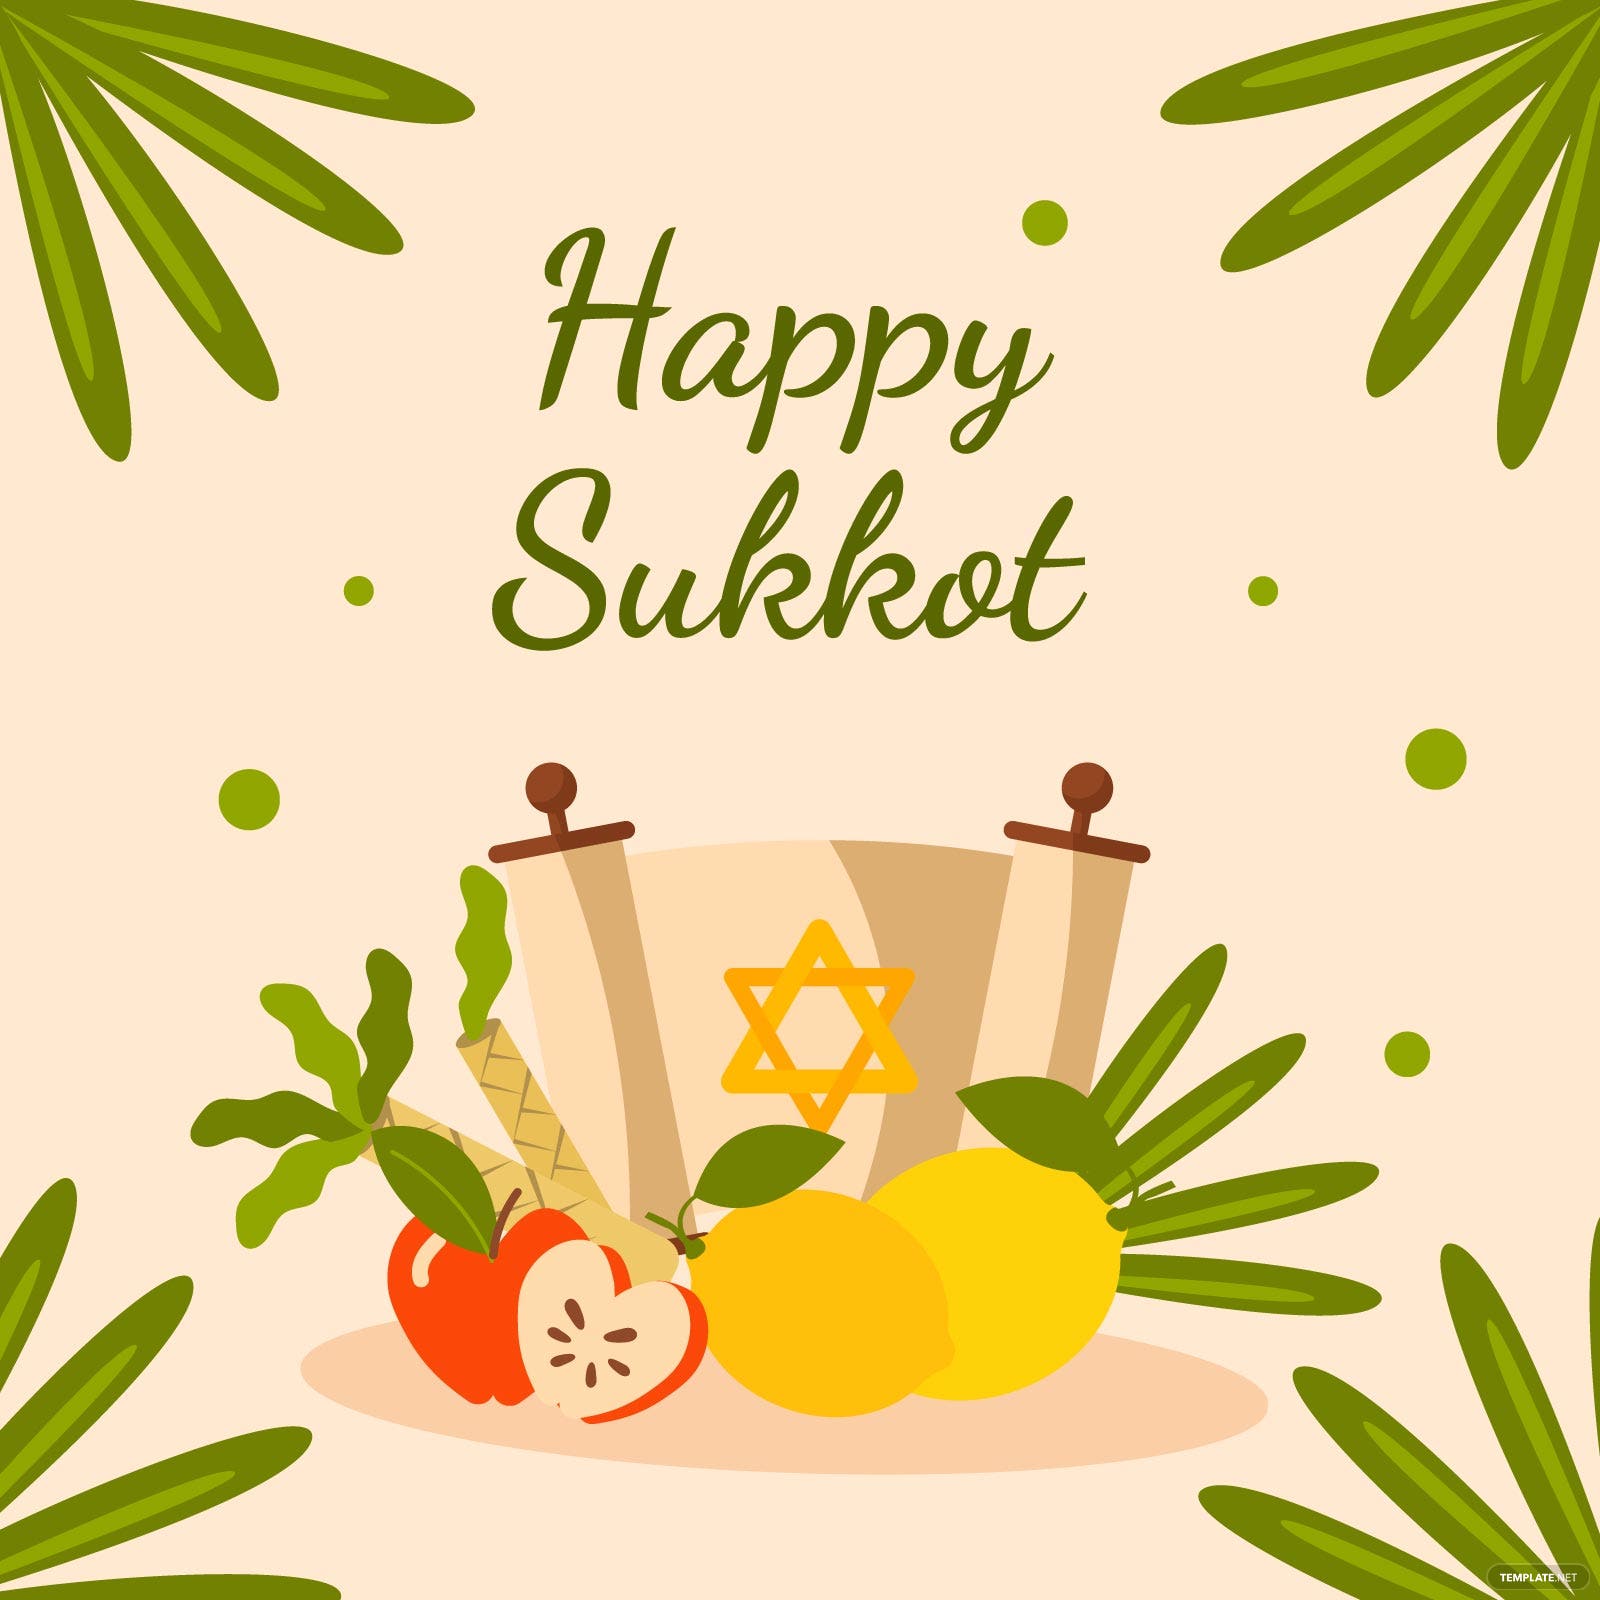 Sukkot When Is Sukkot? Meaning, Dates, Purpose